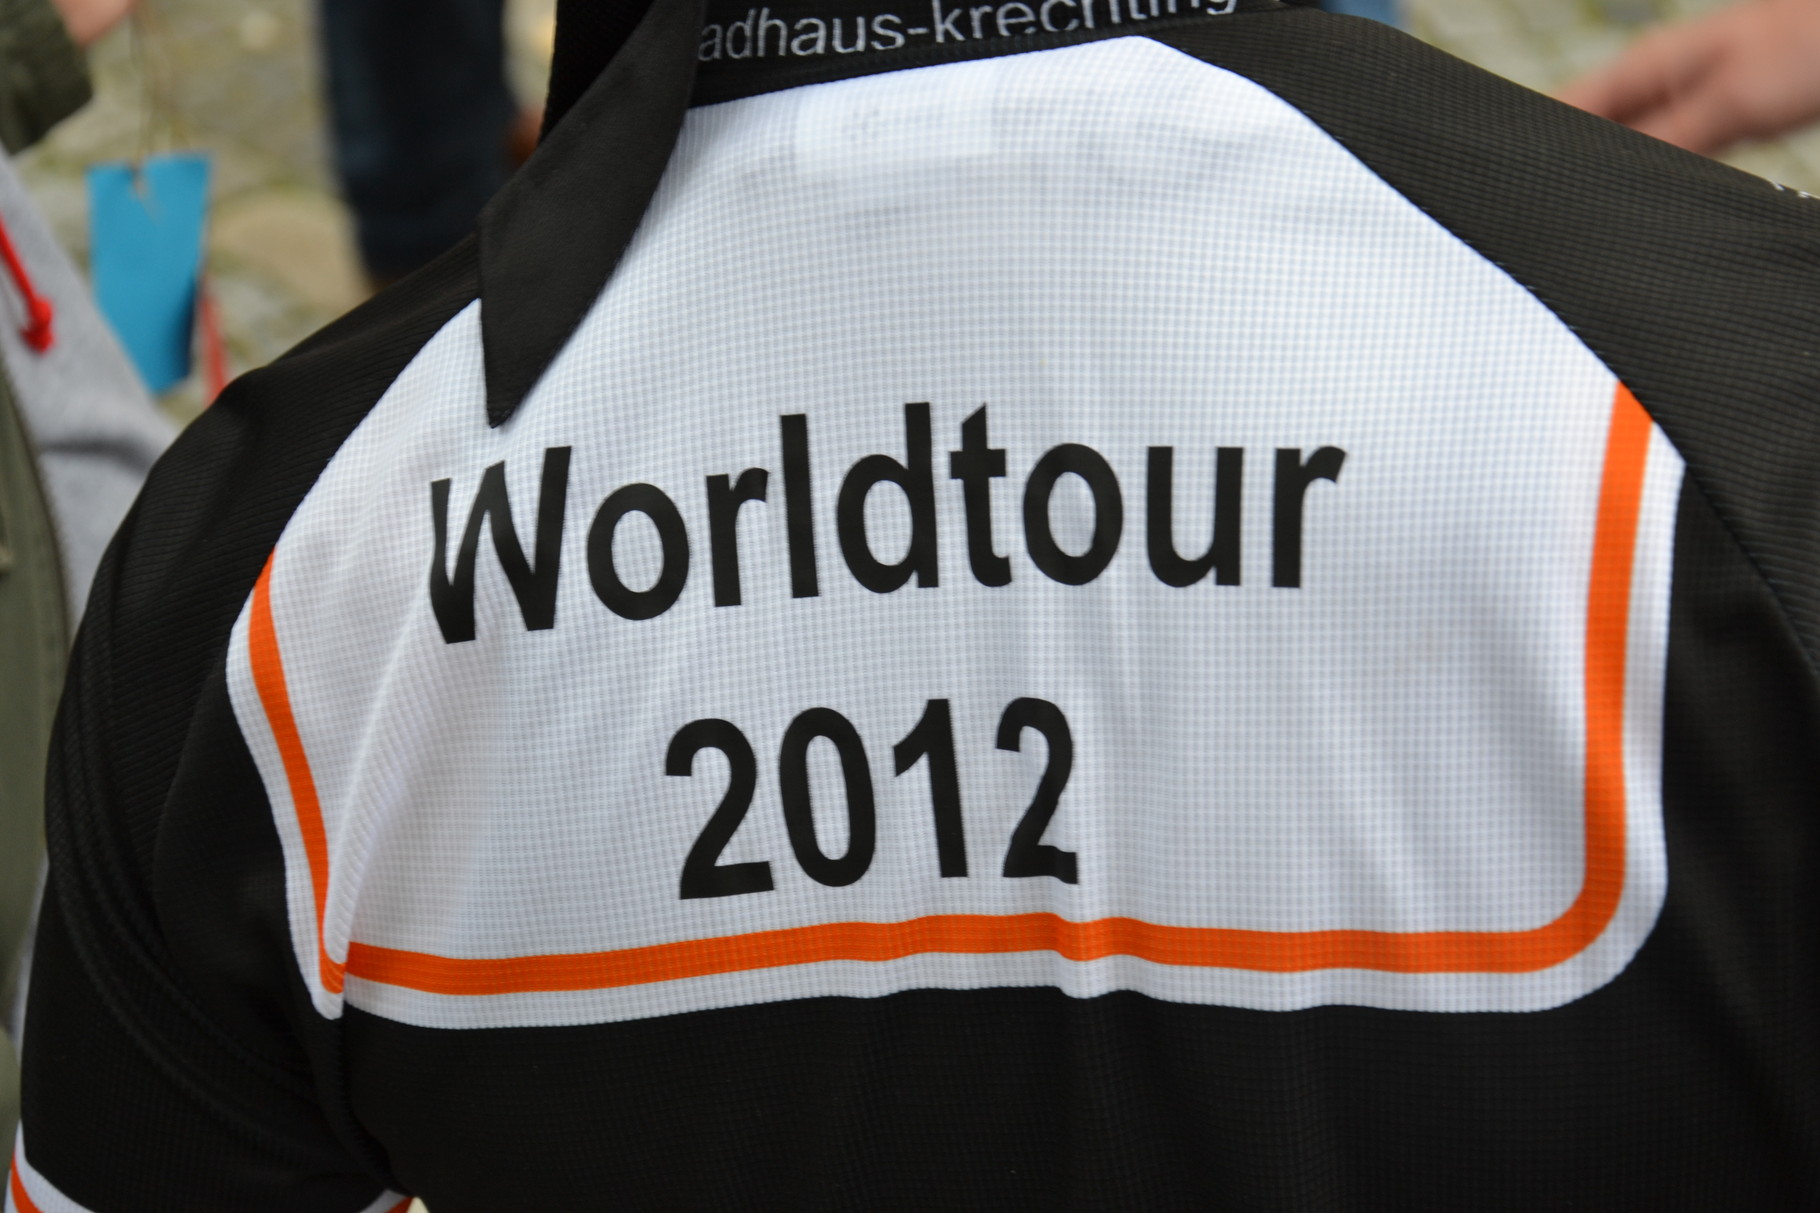 "Worldtour 2012"